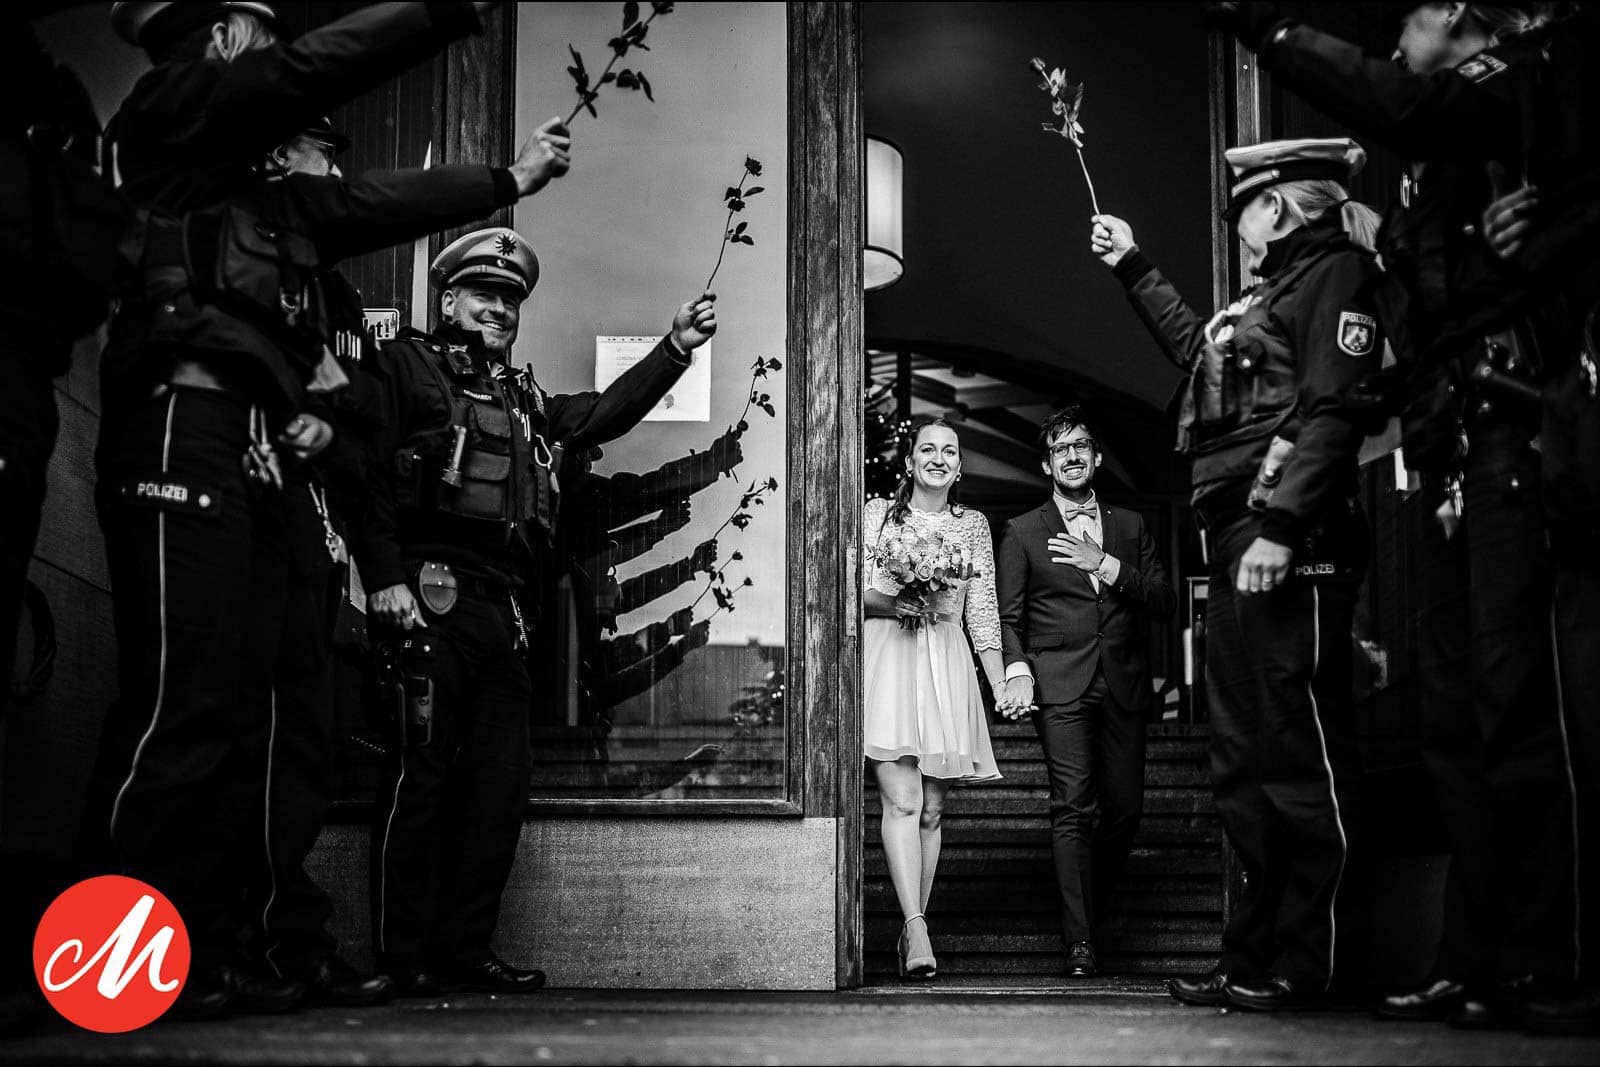 Hochzeitspaar wird von den Arbeitskolleg*innen der Polizei vorm Standesamt mit Rosen empfangen. - Gewinnerbild Masters Awards - Hochzeitsfotografin Sina Frantzen bildsprache Remscheid